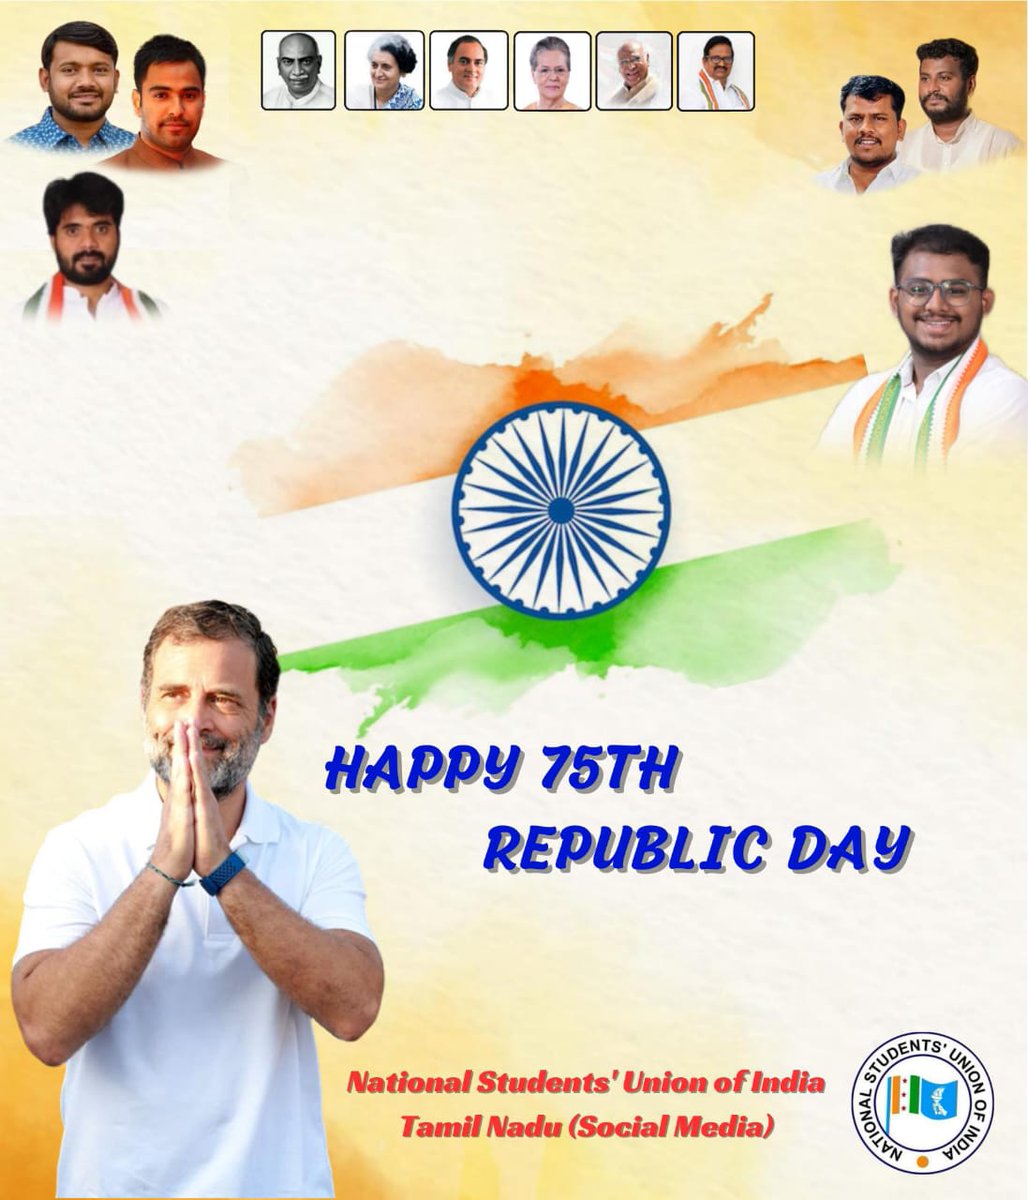 அனைவர்க்கும் இனிய குடியரசு தின நல்வாழ்த்துகள்.

#RepublicDay 
#RepublicDay2024 
#IndianRepublicDay 
#NSUI